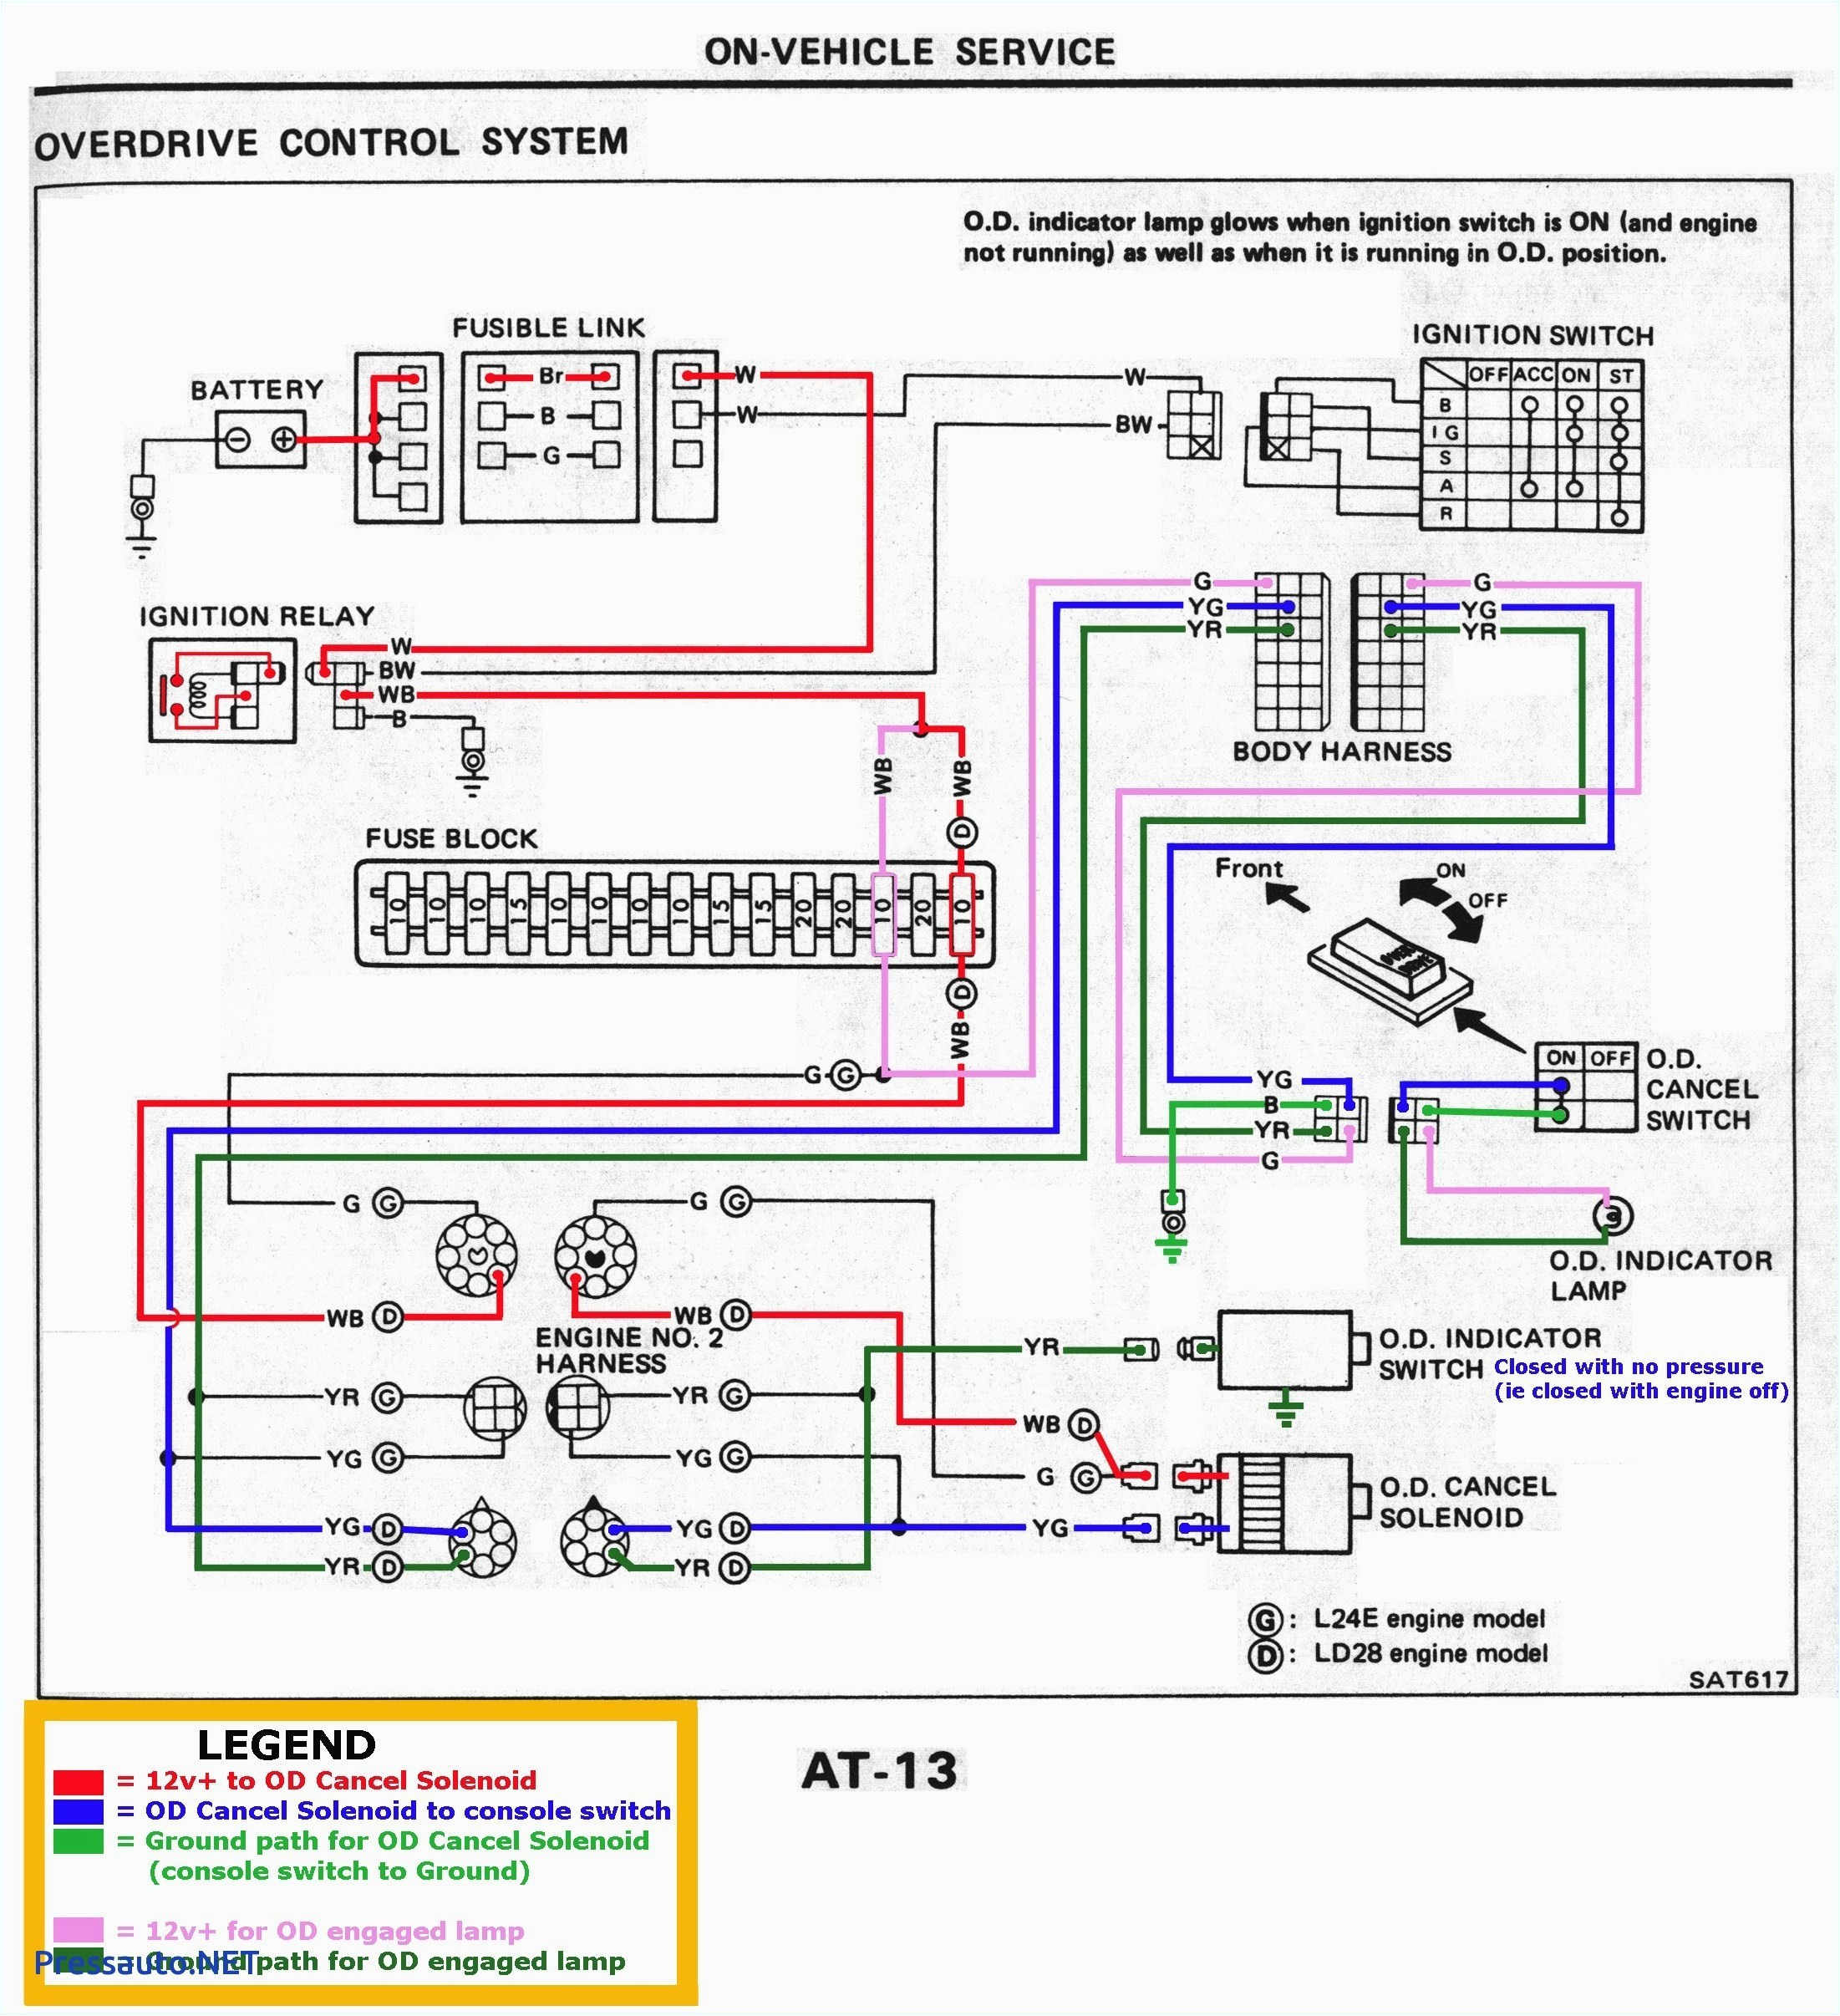 2005 Mazda 3 Radio Wiring Diagram Mazda 3 Car Stereo Wiring Diagram Wiring Diagram Technic